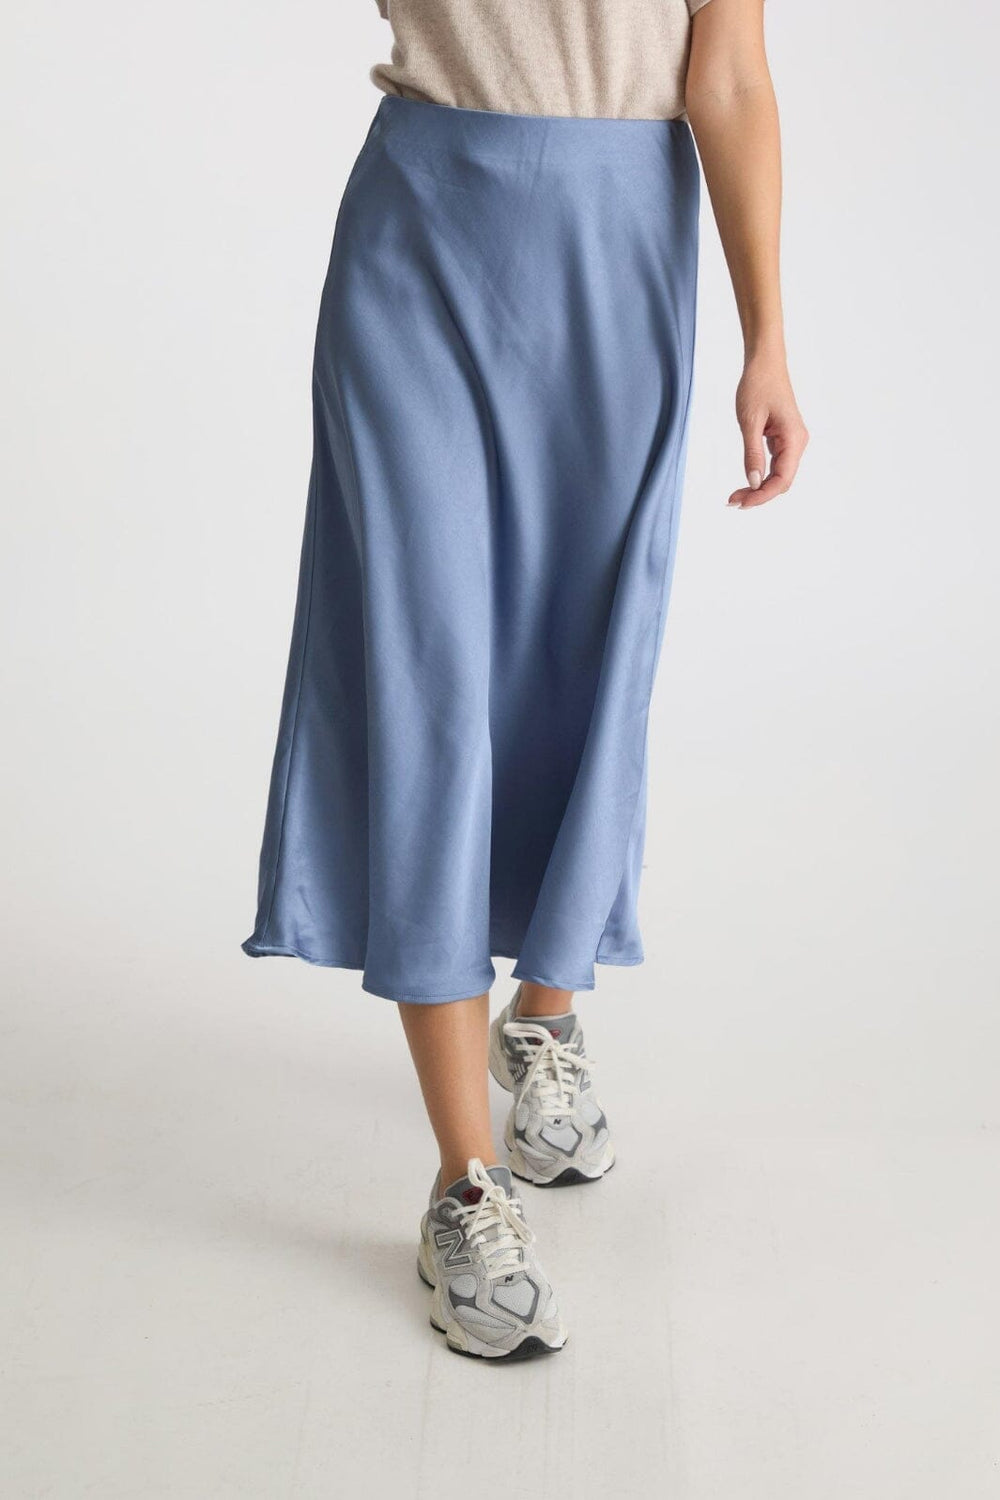 Neo Noir - Bovary Skirt - Smoke Blue Nederdele 